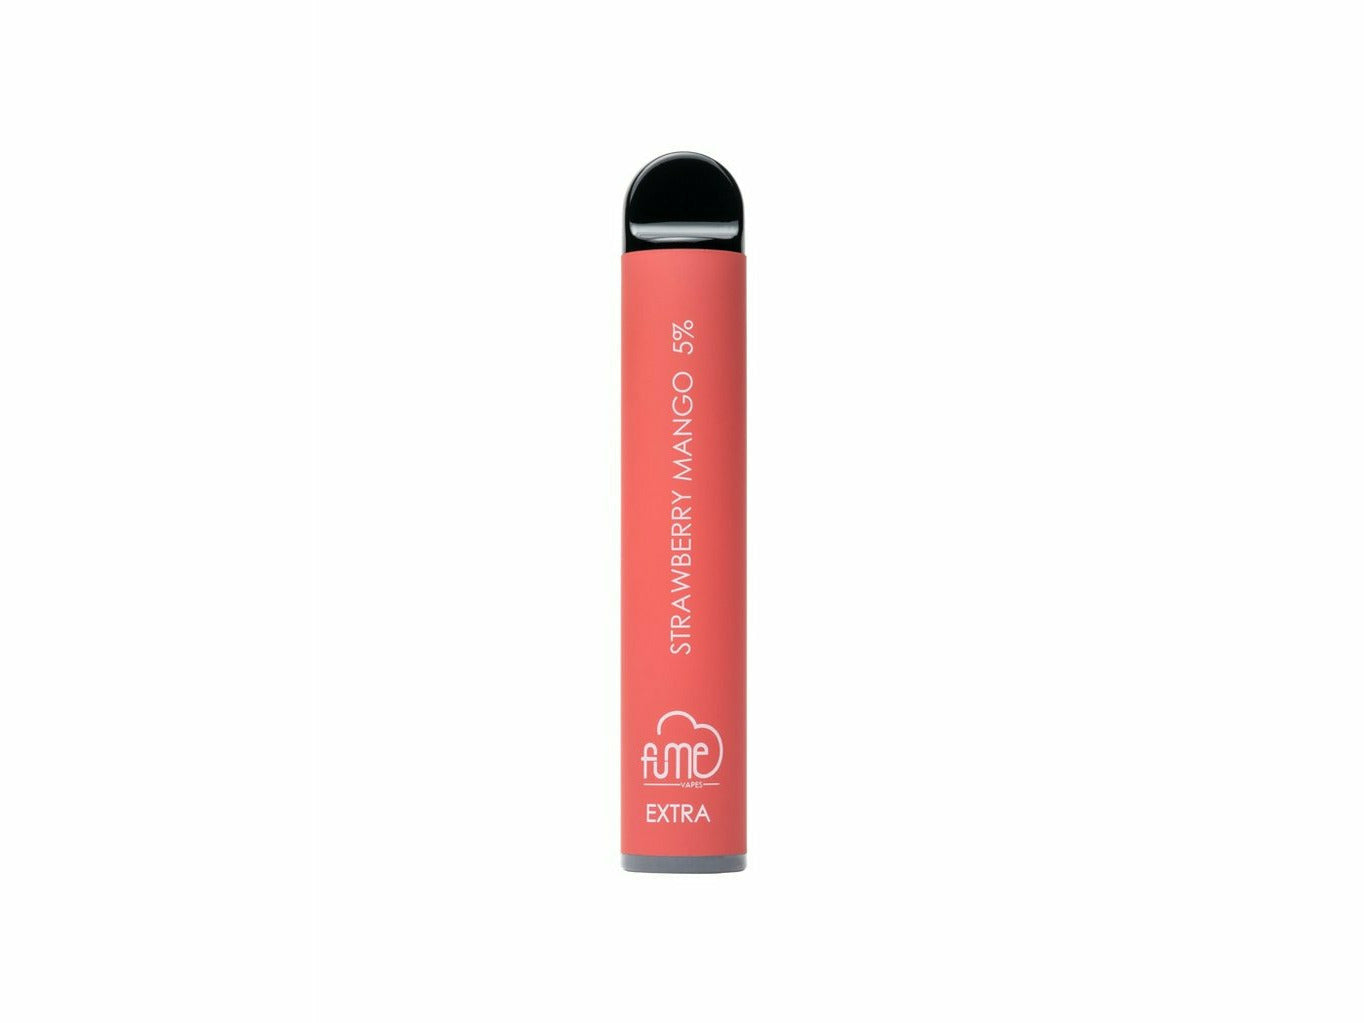 Fume Strawberry Mango size Extra disposable vape device 